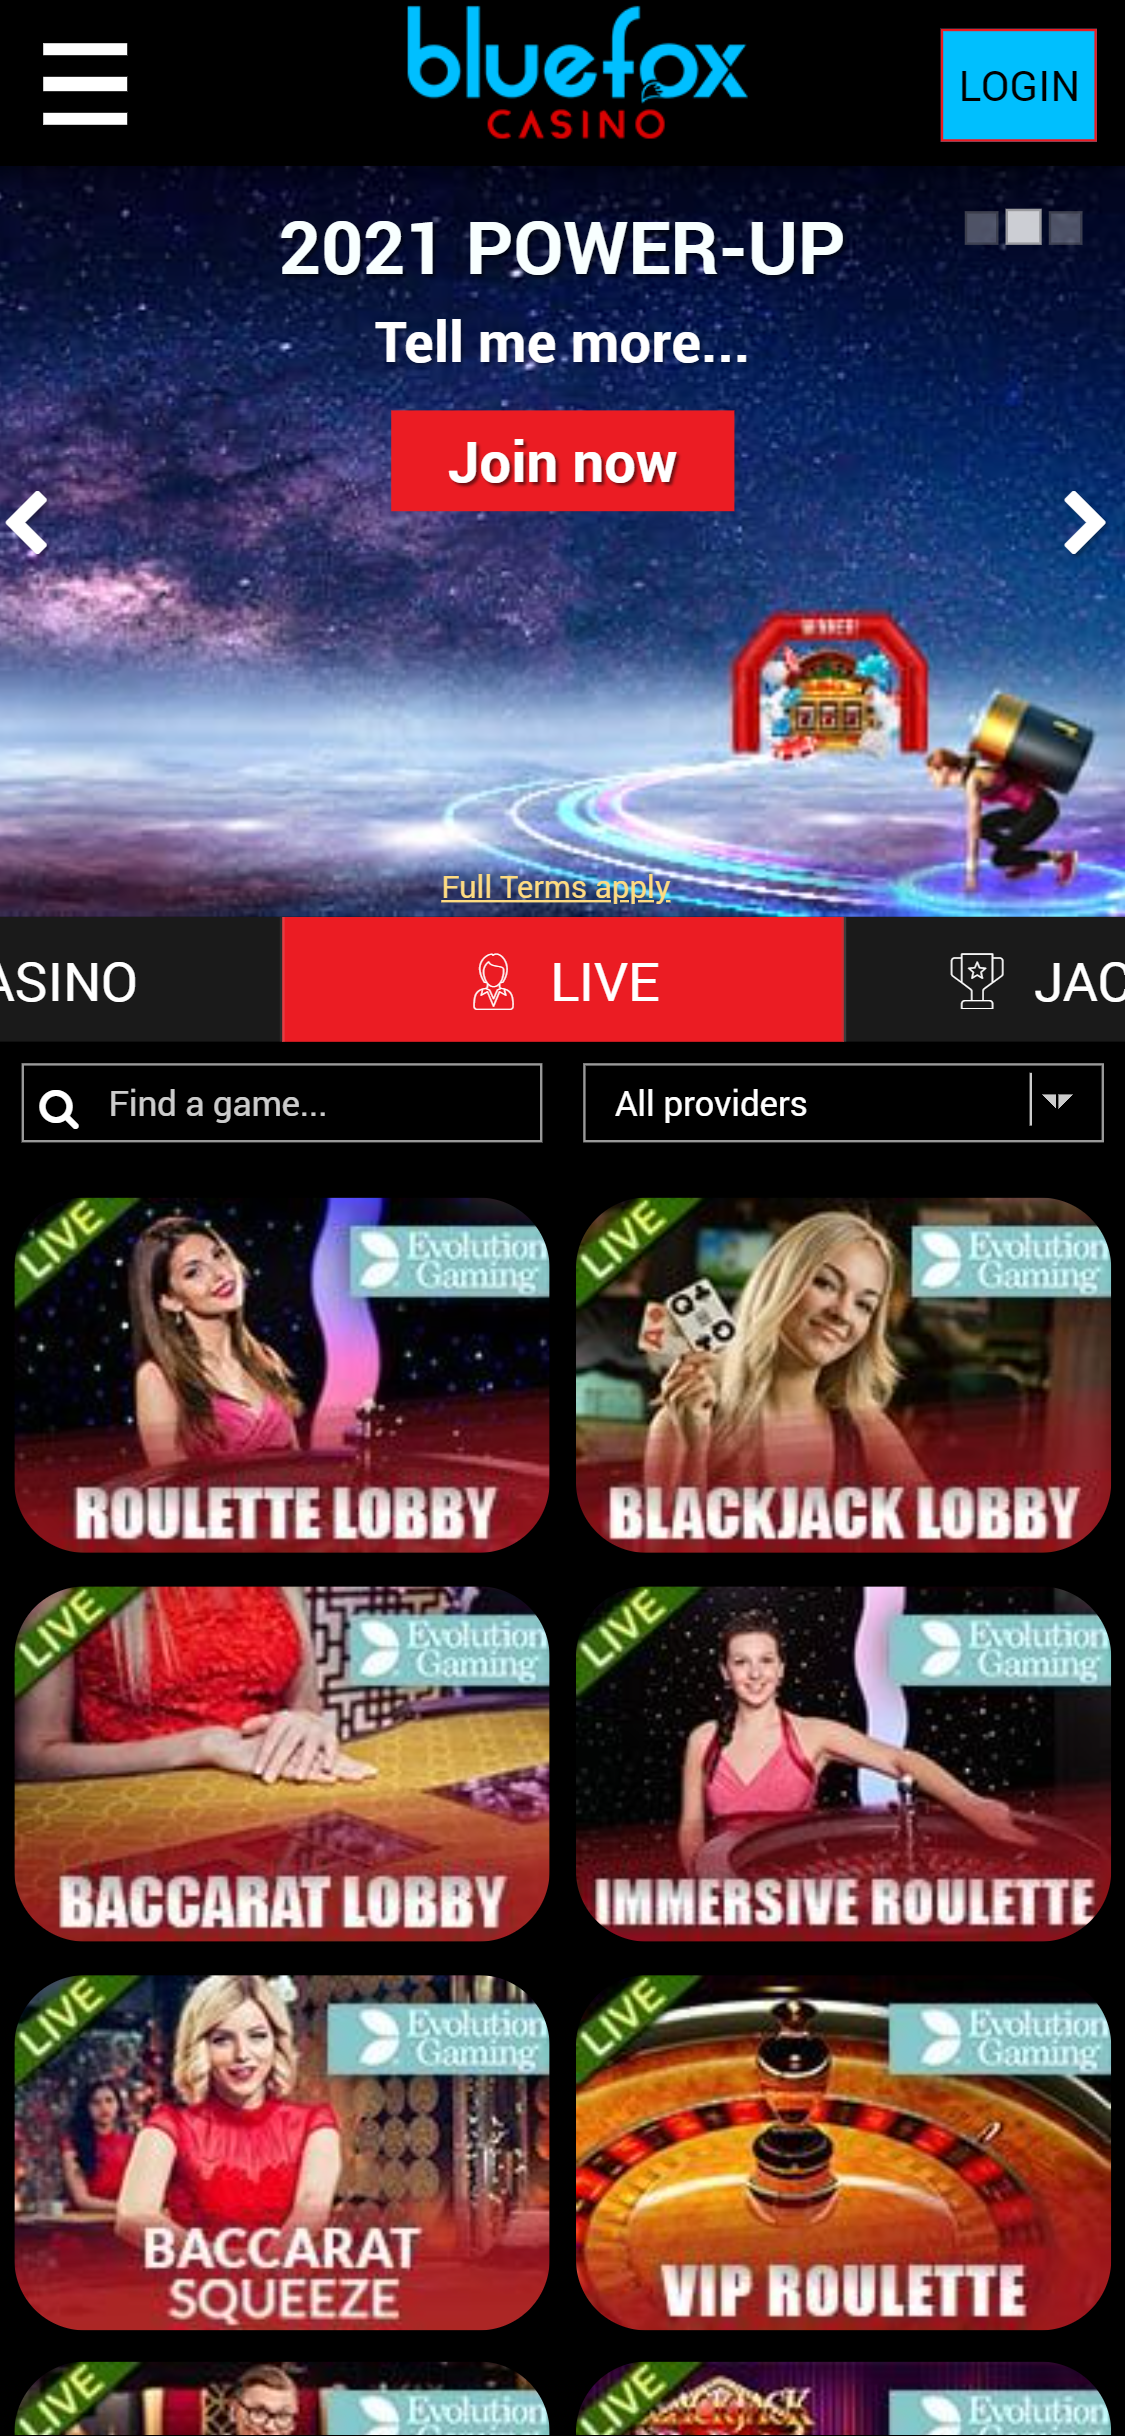 Blue Fox Casino Mobile Live Dealer Games Review